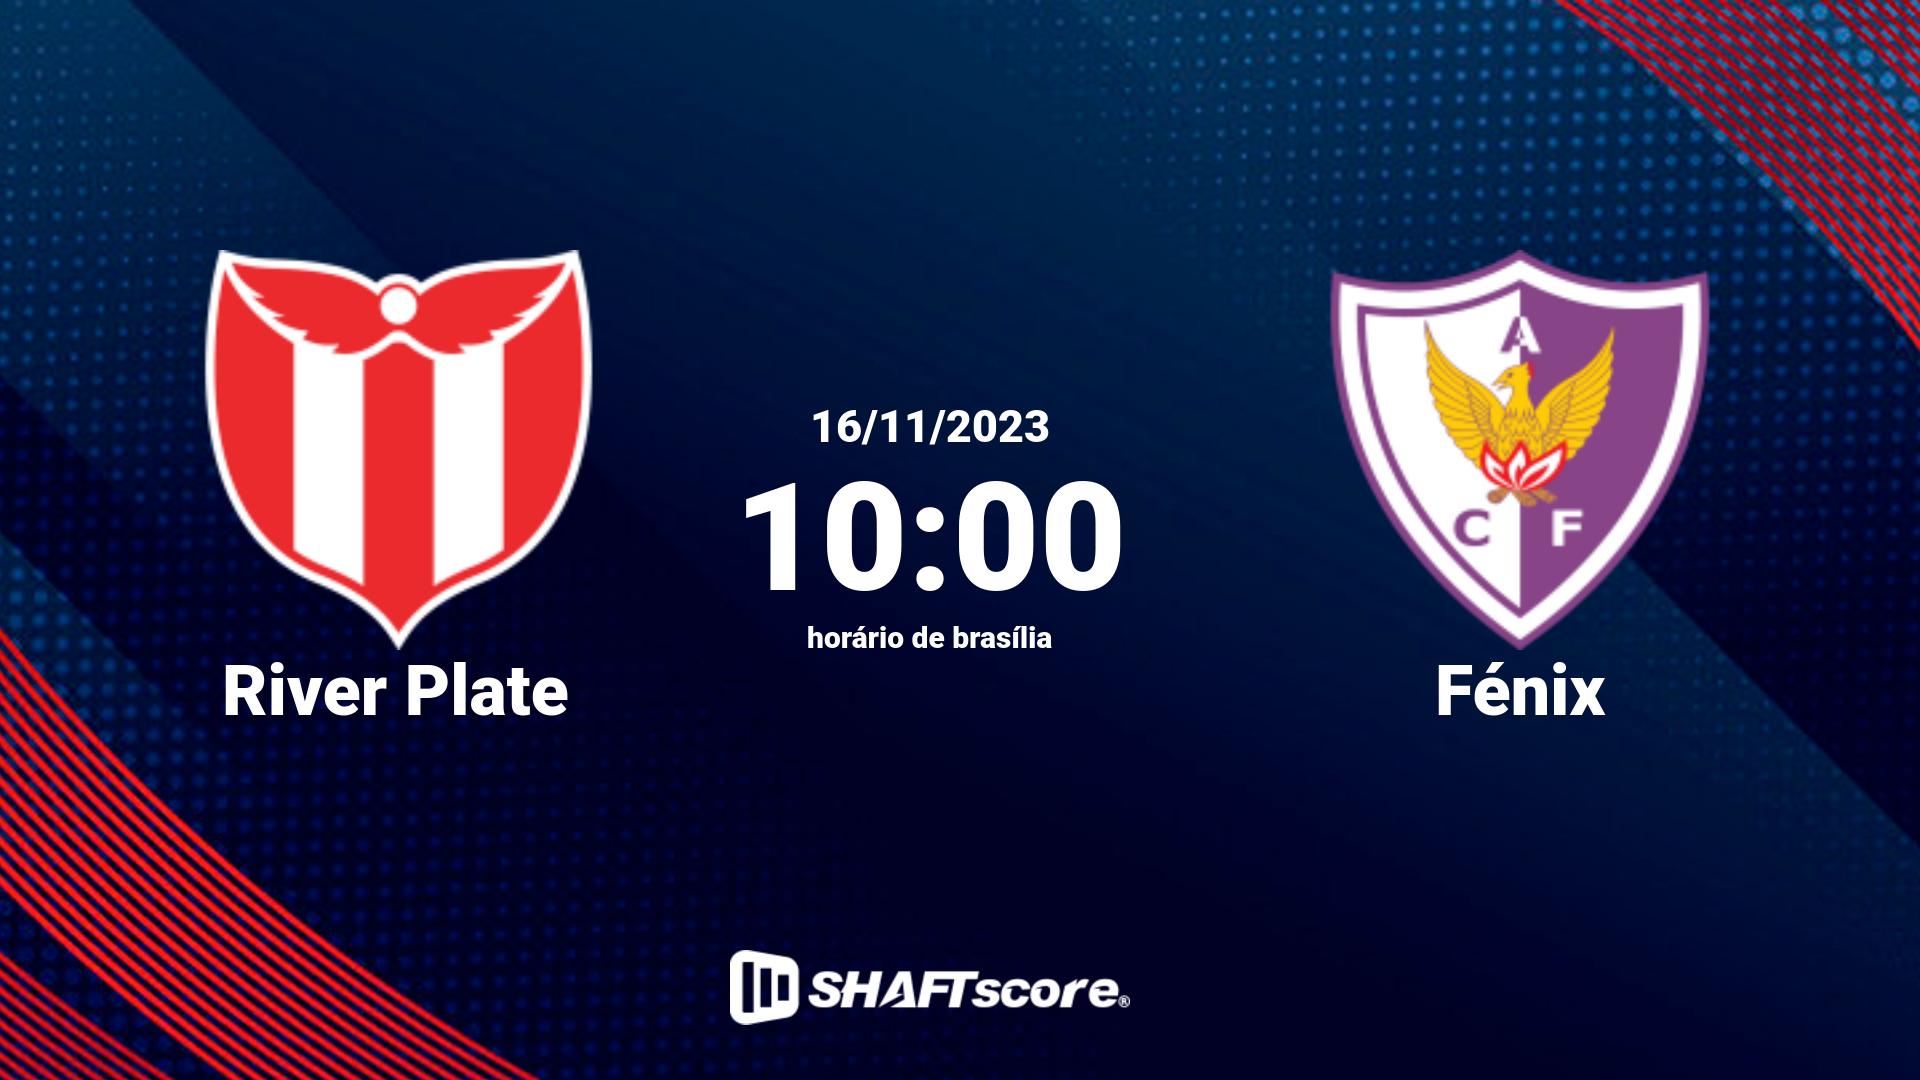 Estatísticas do jogo River Plate vs Fénix 16.11 10:00